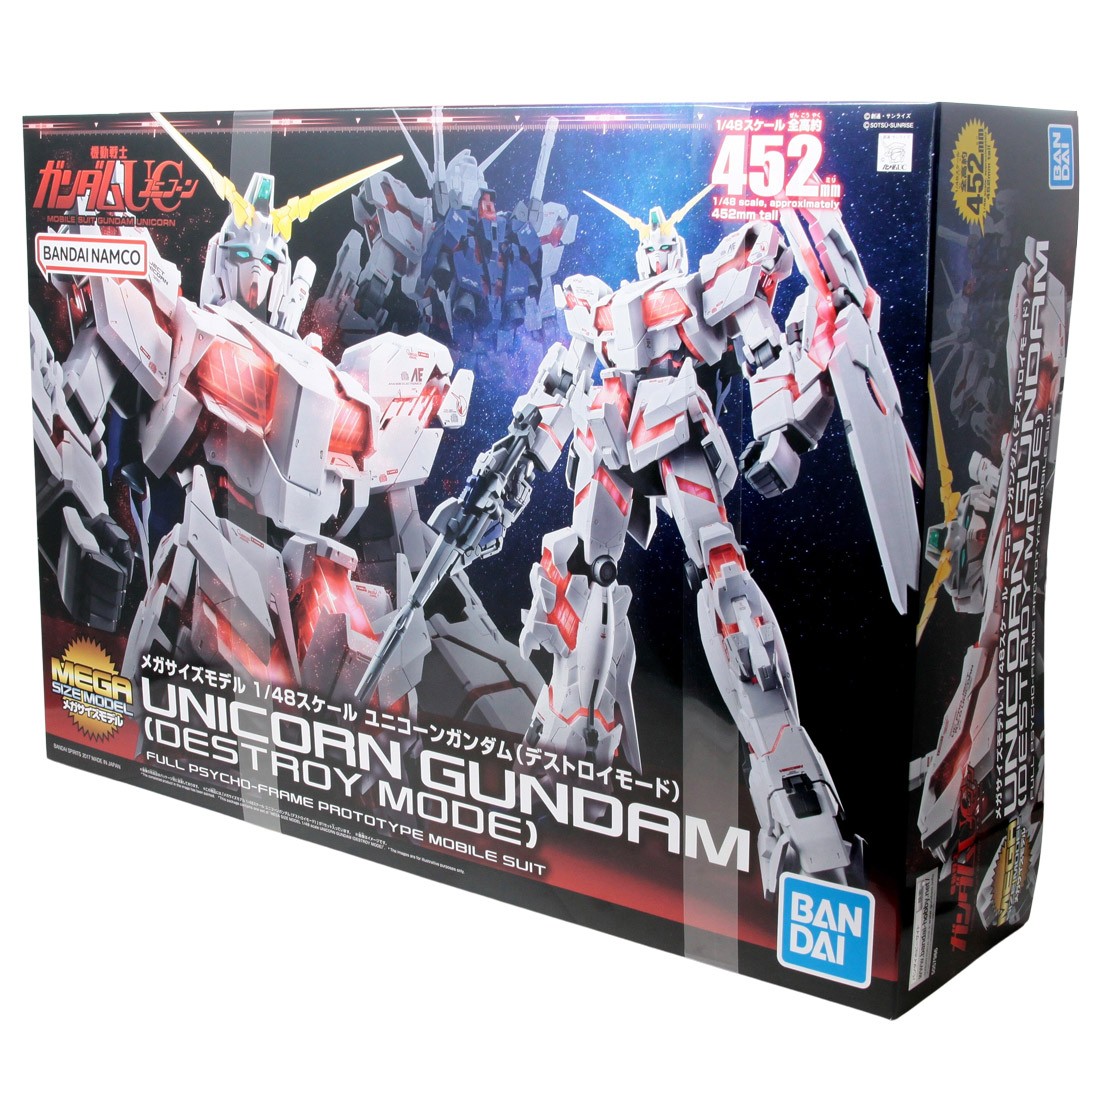  Bandai Hobby Mega Size 1/48 Unicorn Gundam [Destroy Mode]  Gundam UC Model Kit Figure : Arts, Crafts & Sewing